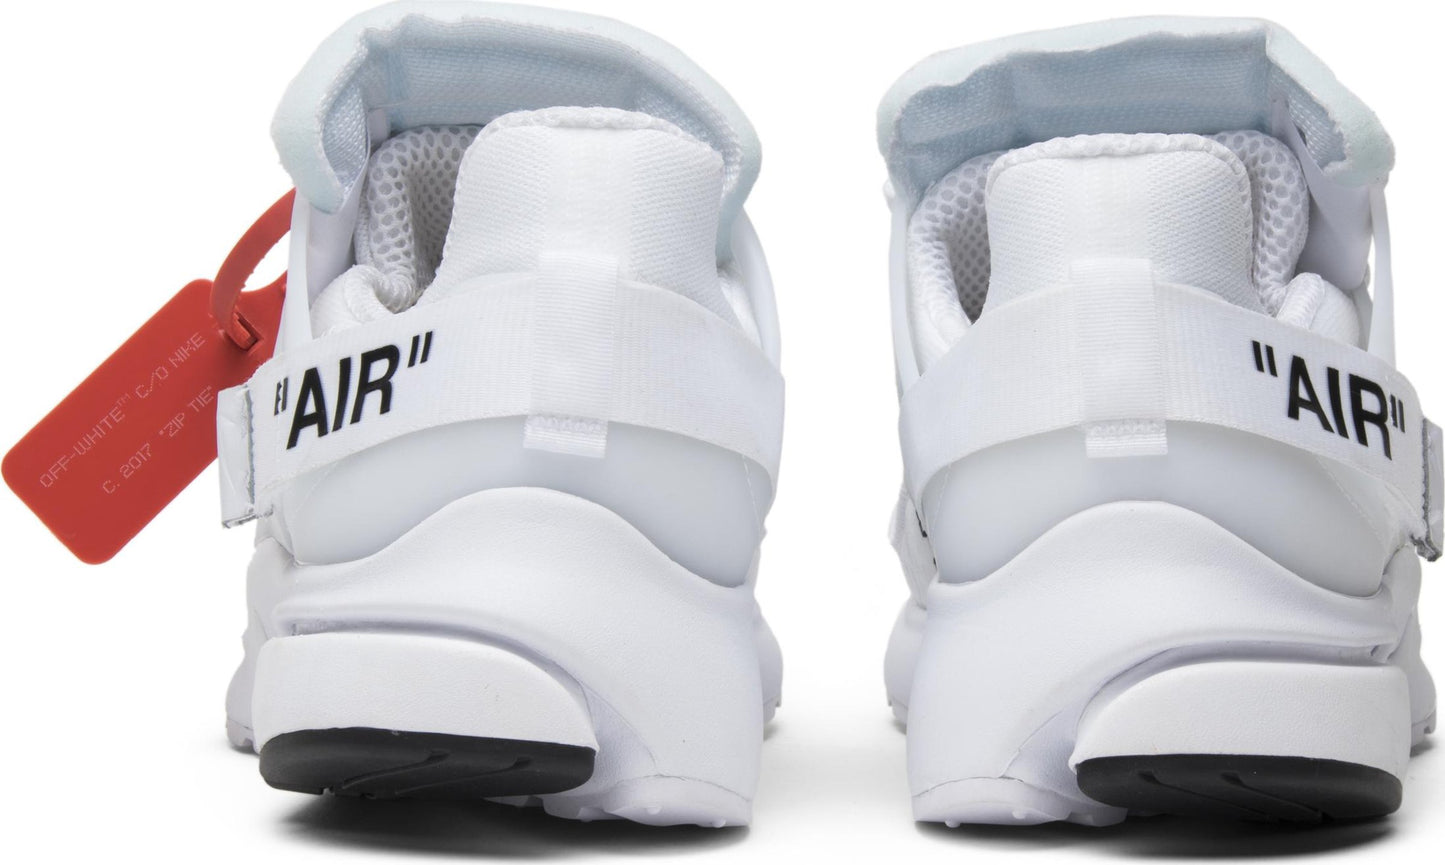 NIKE x OFF-WHITE - Nike Air Presto White x Off-White Sneakers